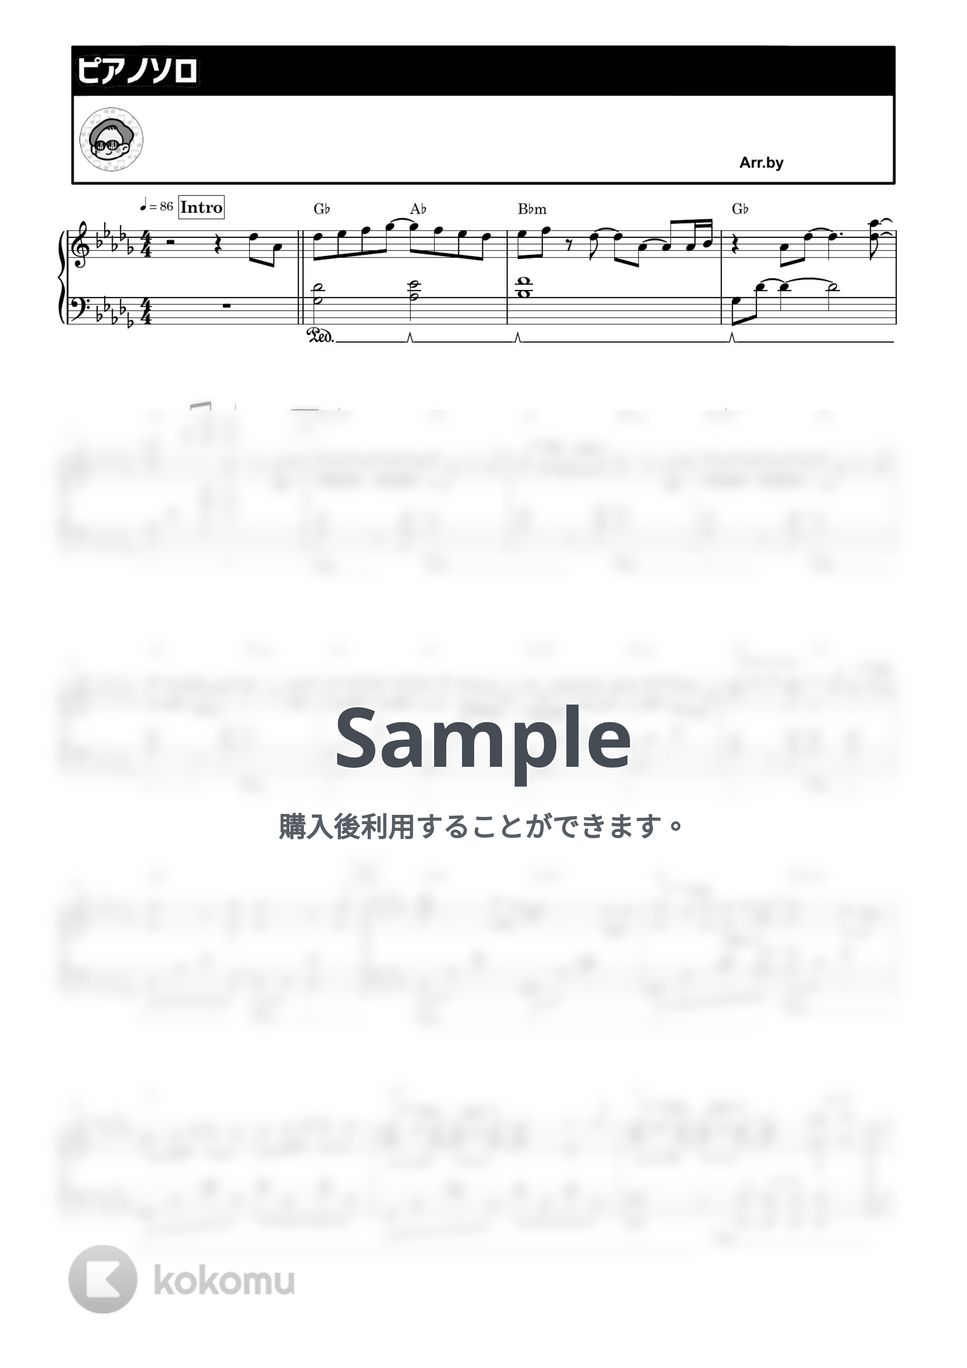 優里 - ミズキリ by シータピアノ